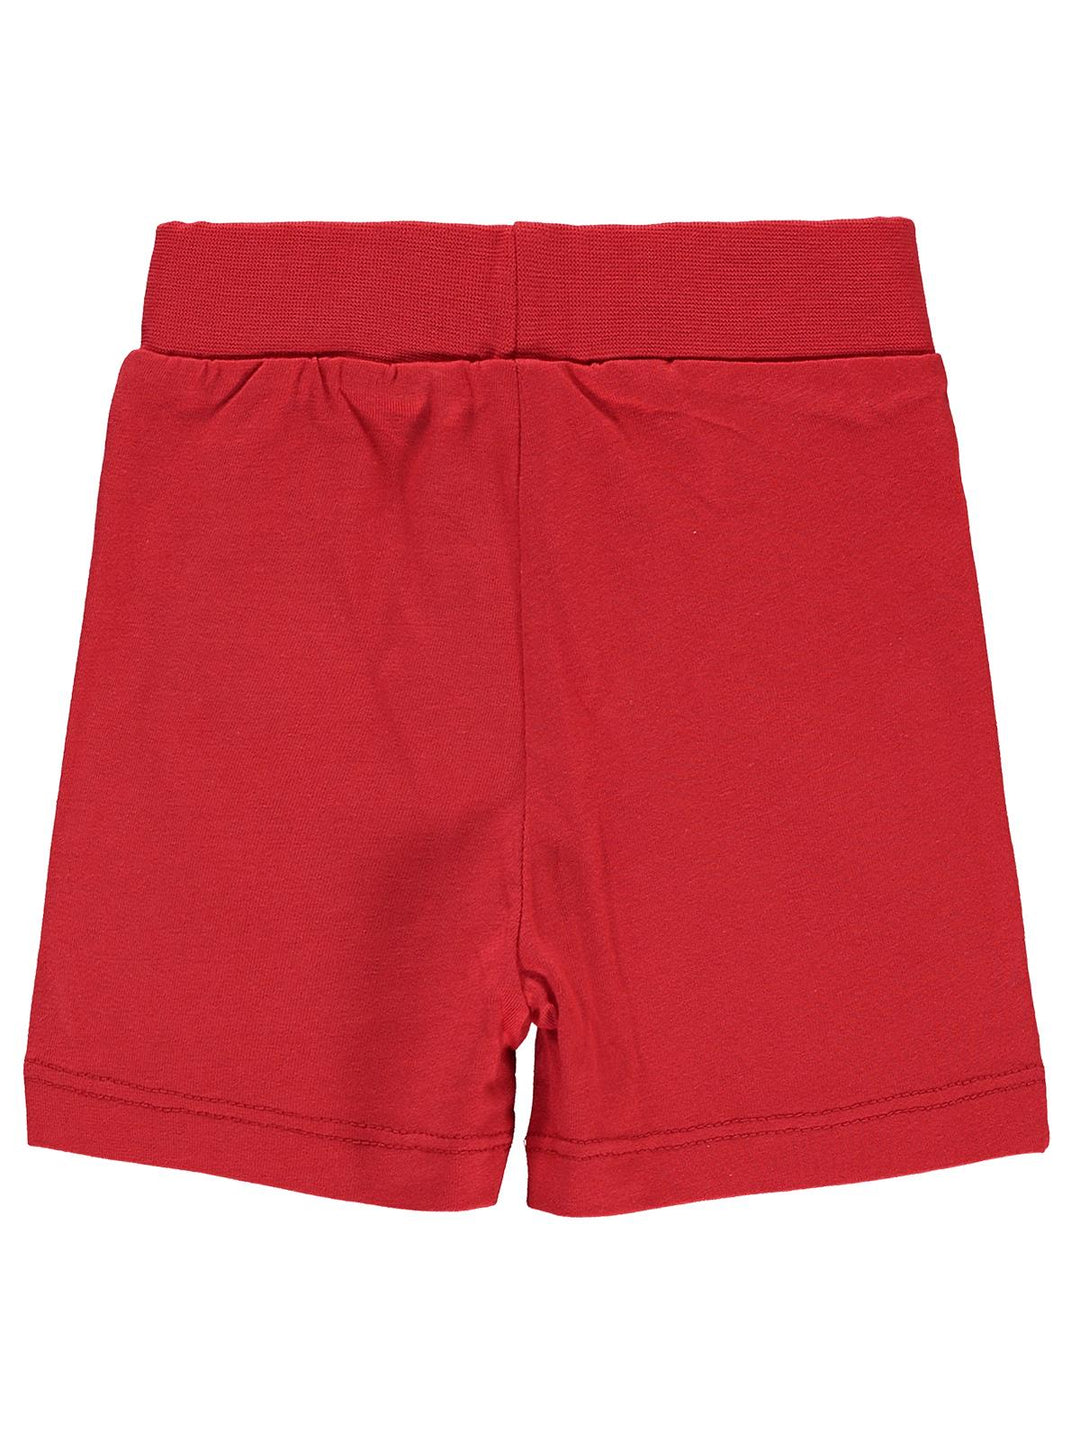 Civil Boys Cotton Shorts #D814 (S-22)